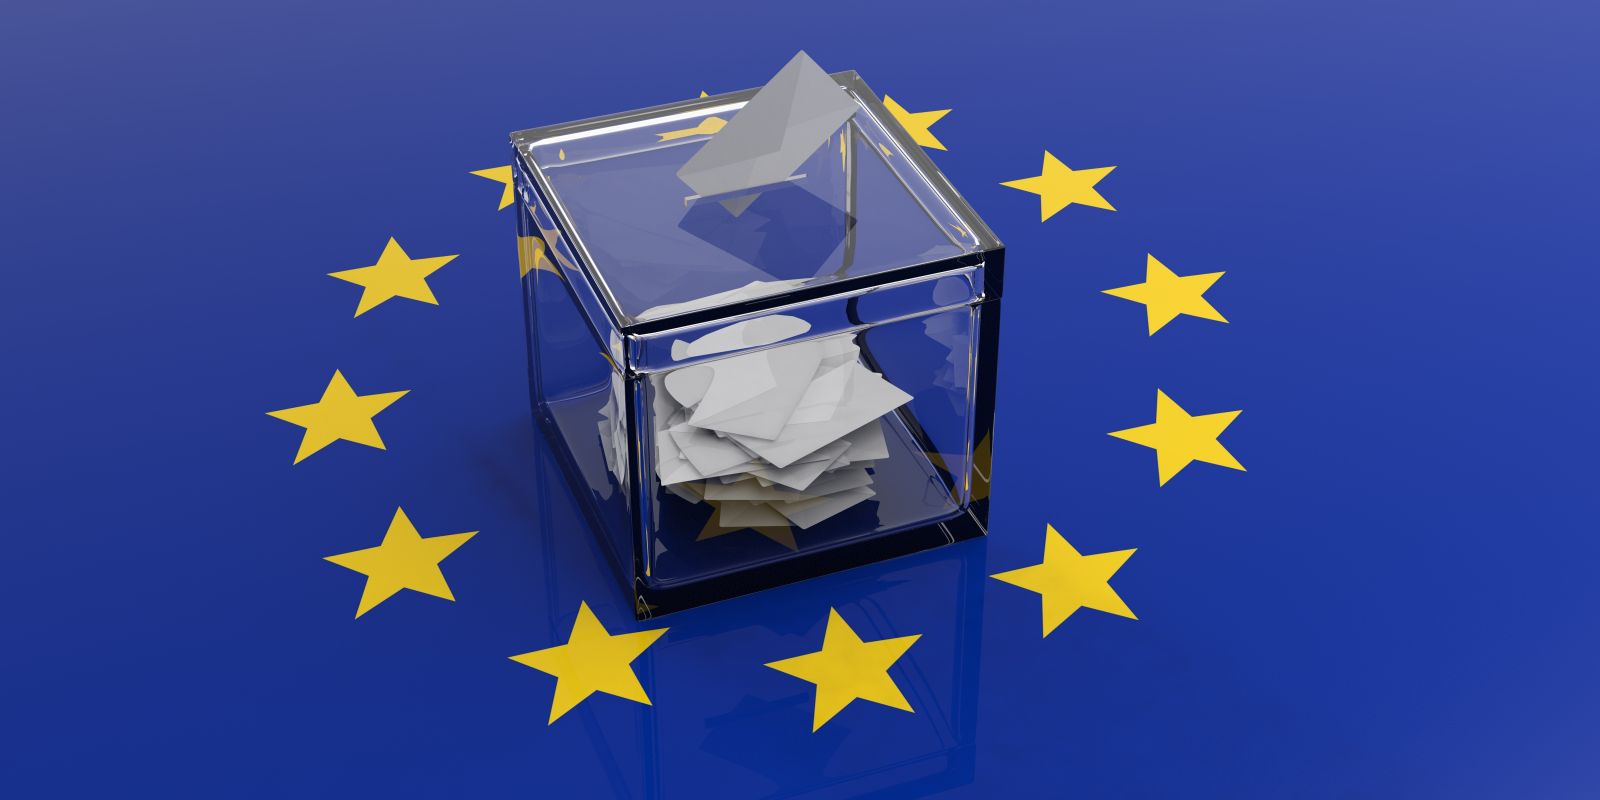 Elections européennes 2024